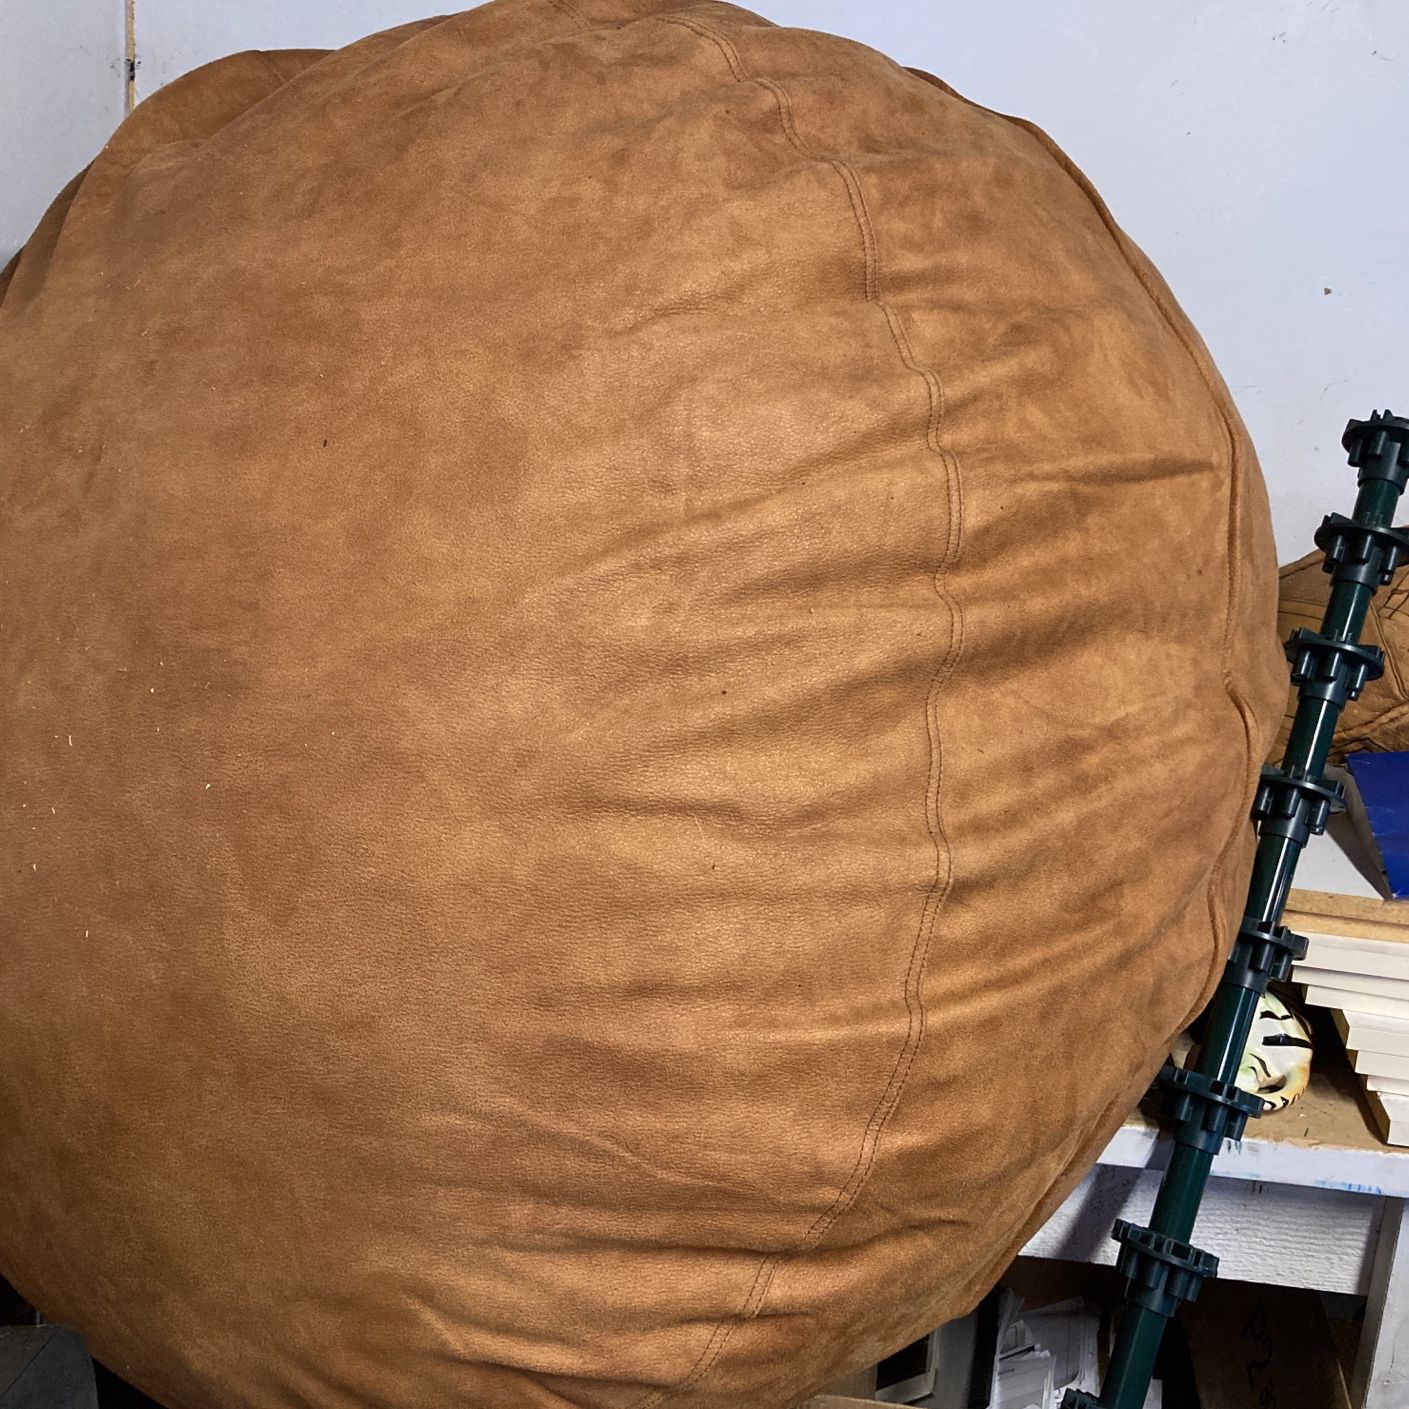 Giant Bean Bag Chair